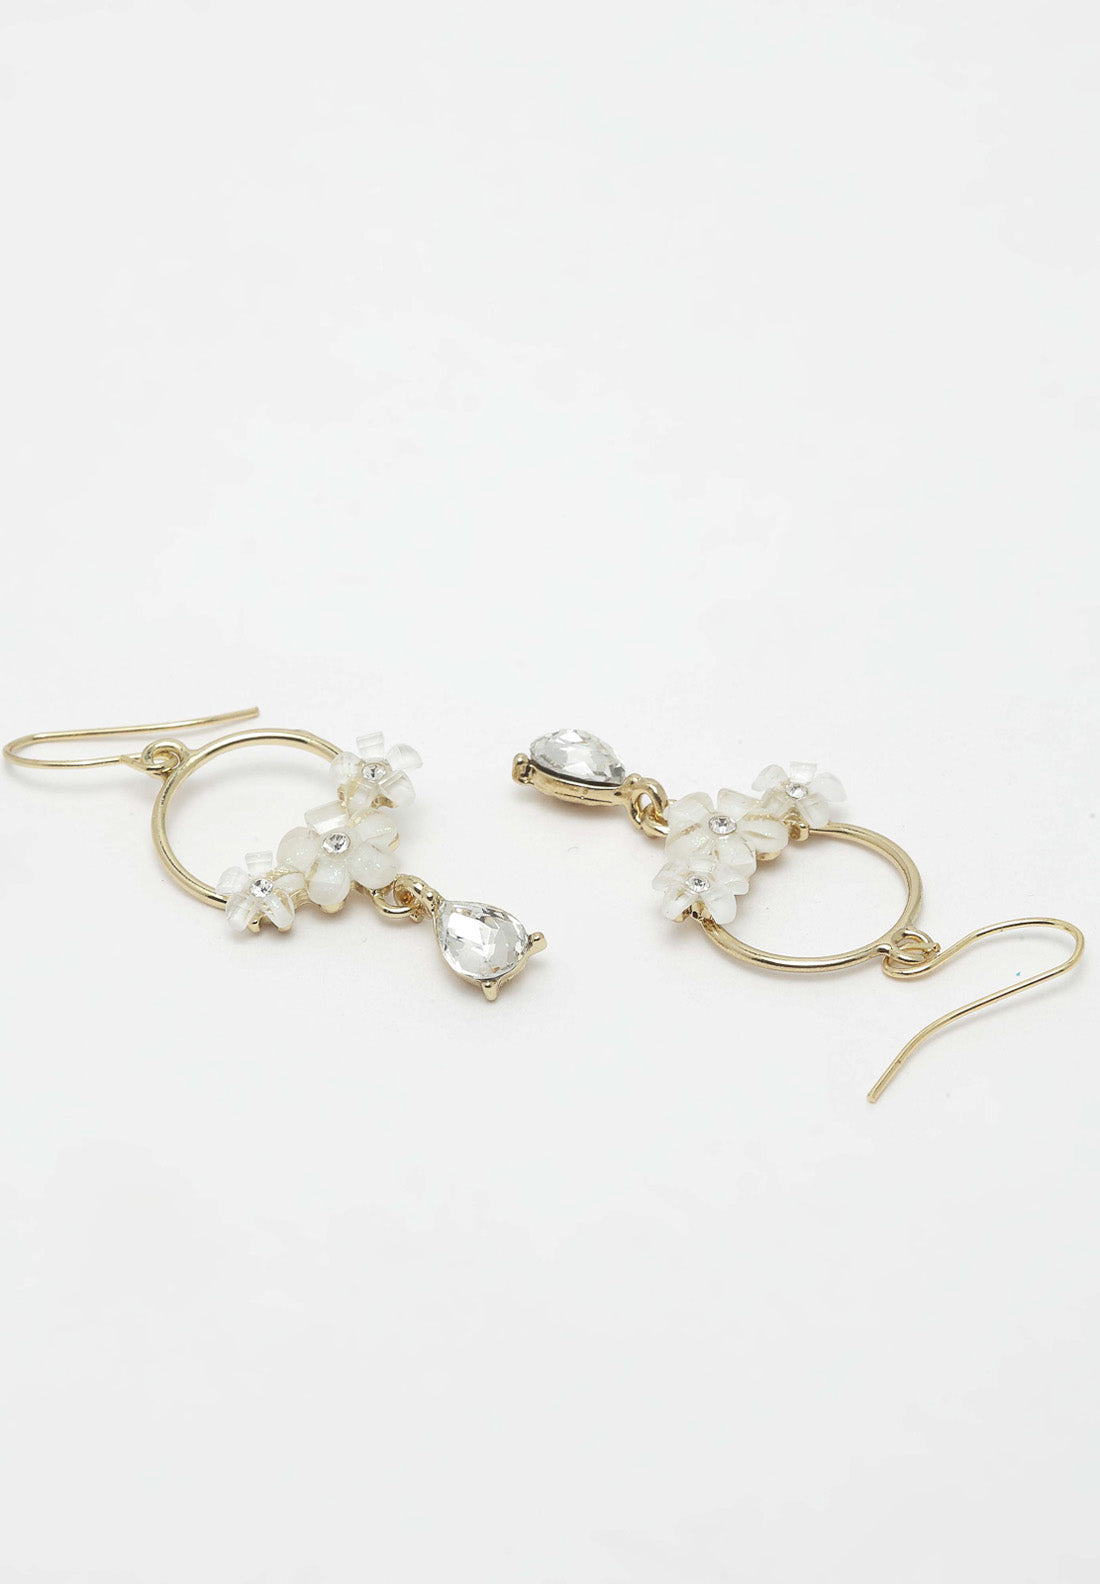 Boucles d'oreilles dorées et cristaux floraux blancs